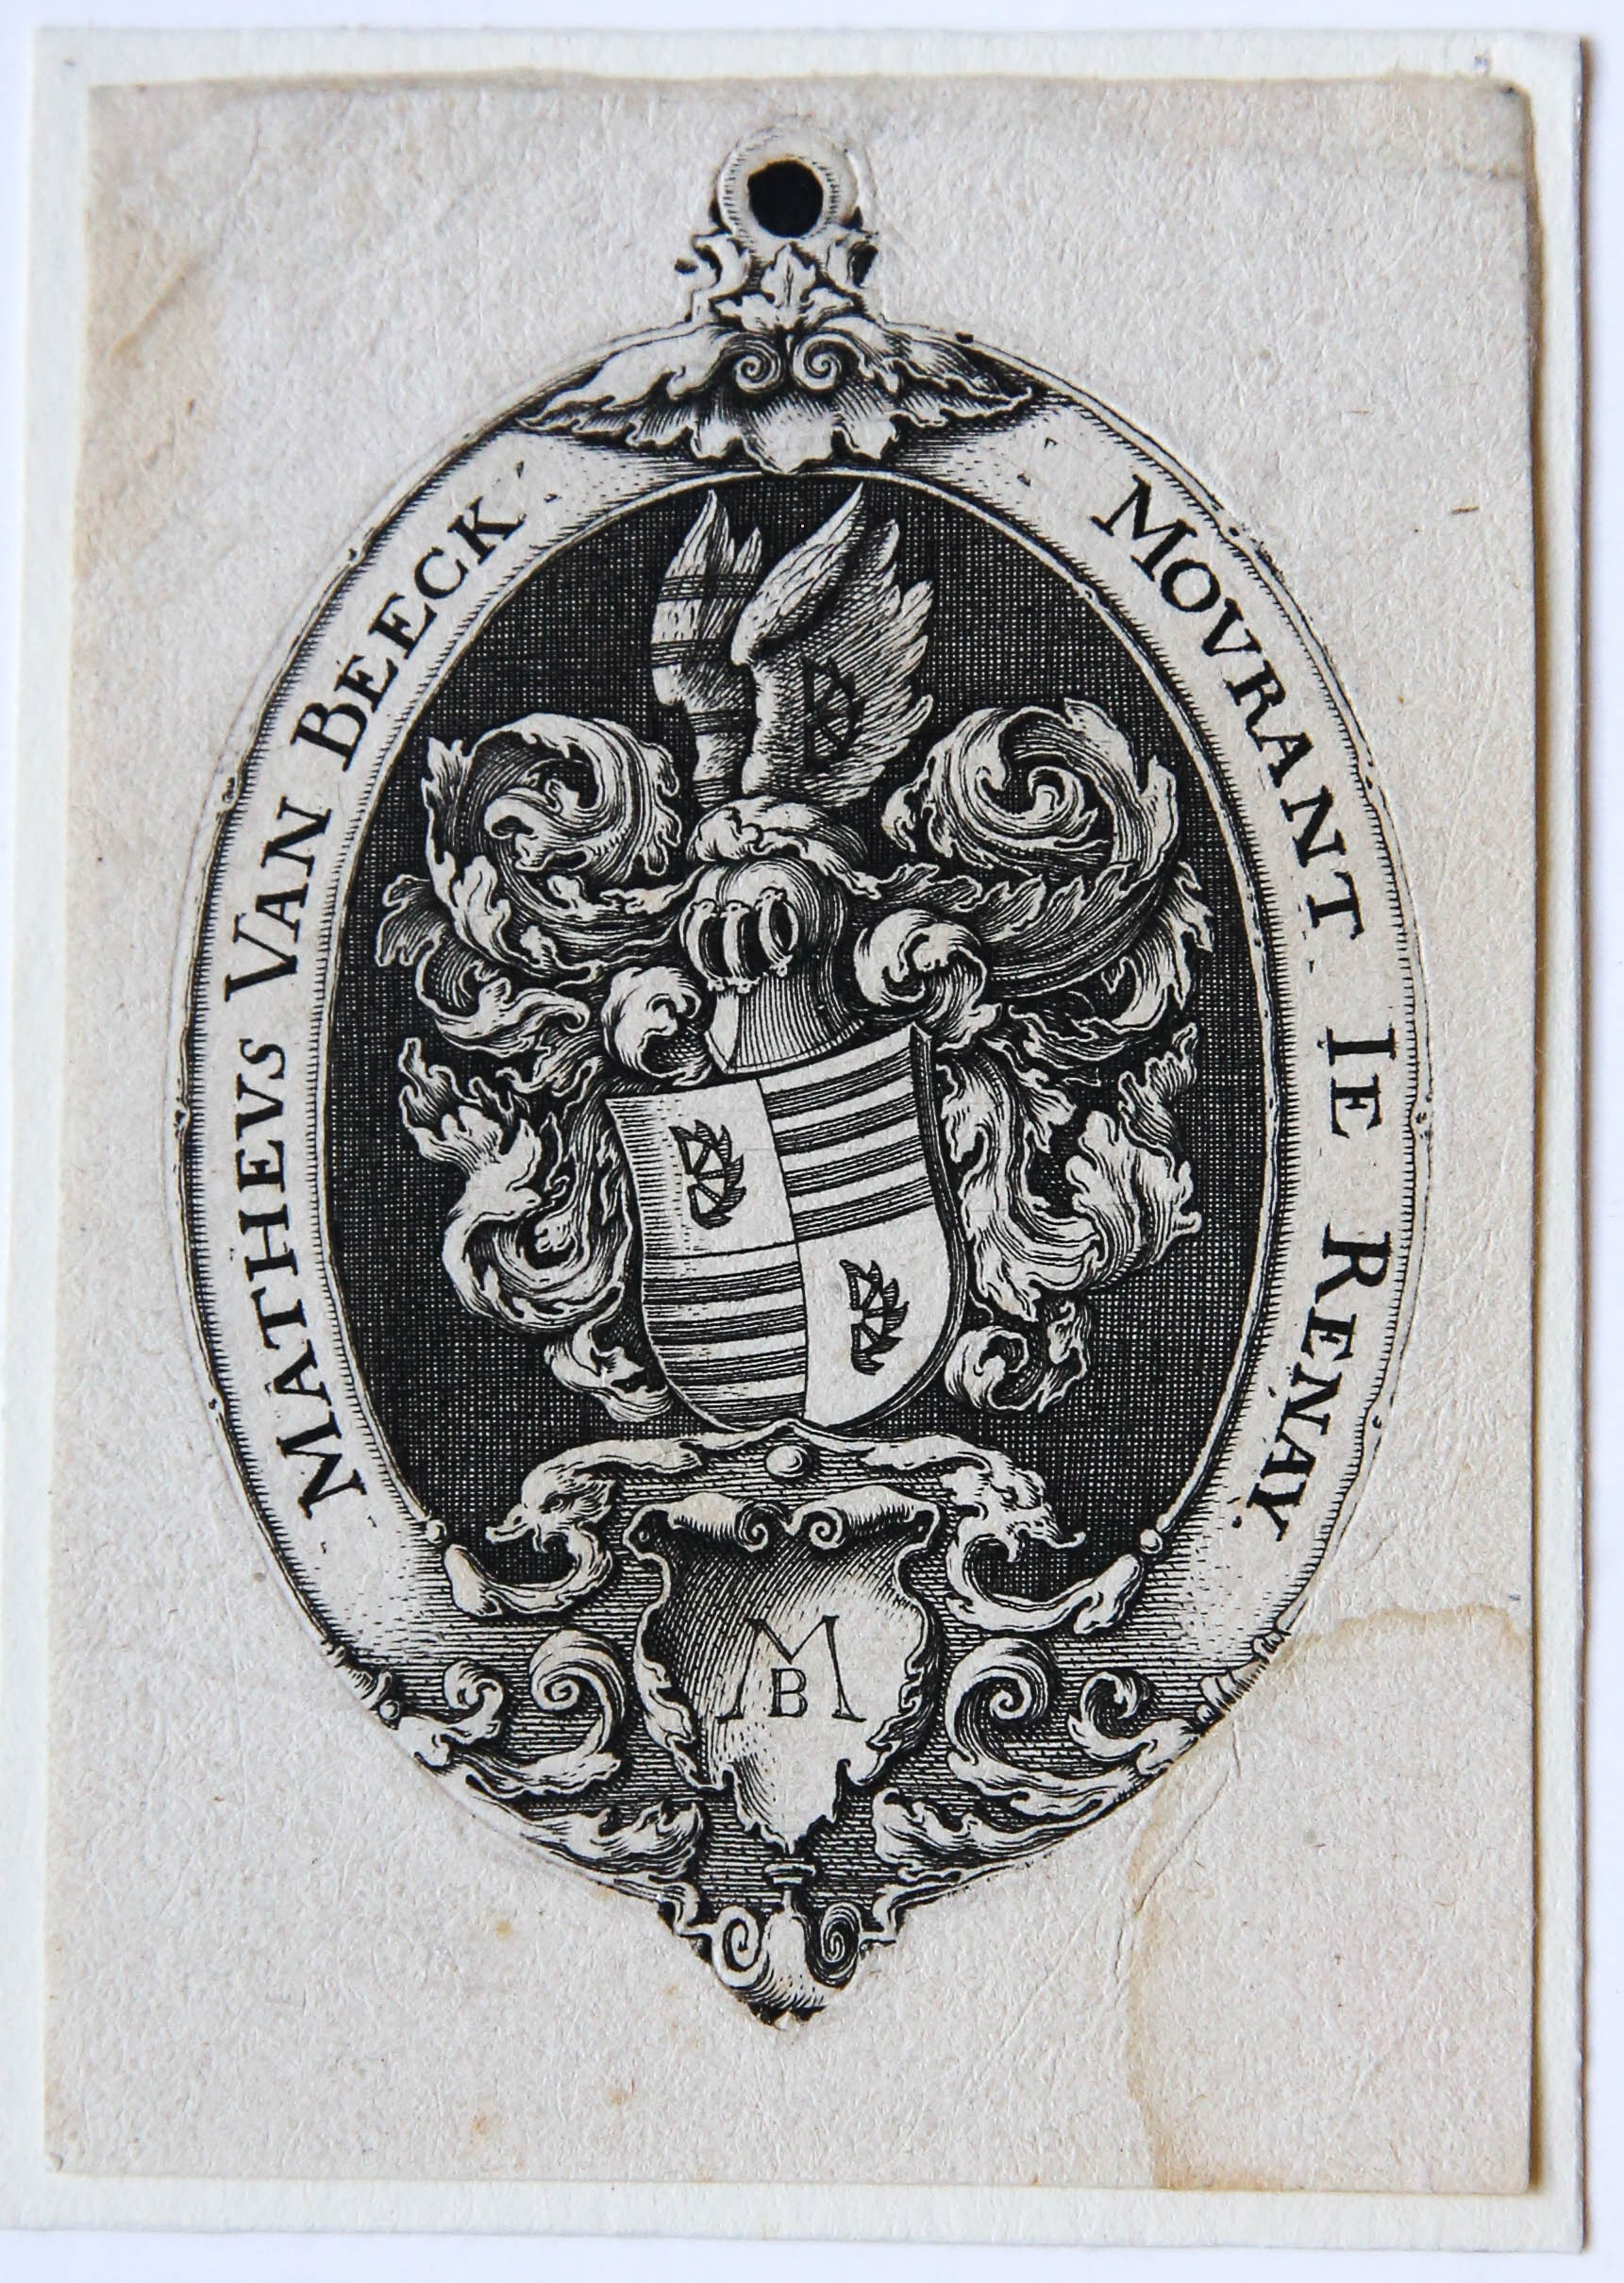 Print: Familiewapen/Coat of arms of Mattheus van Beeck.